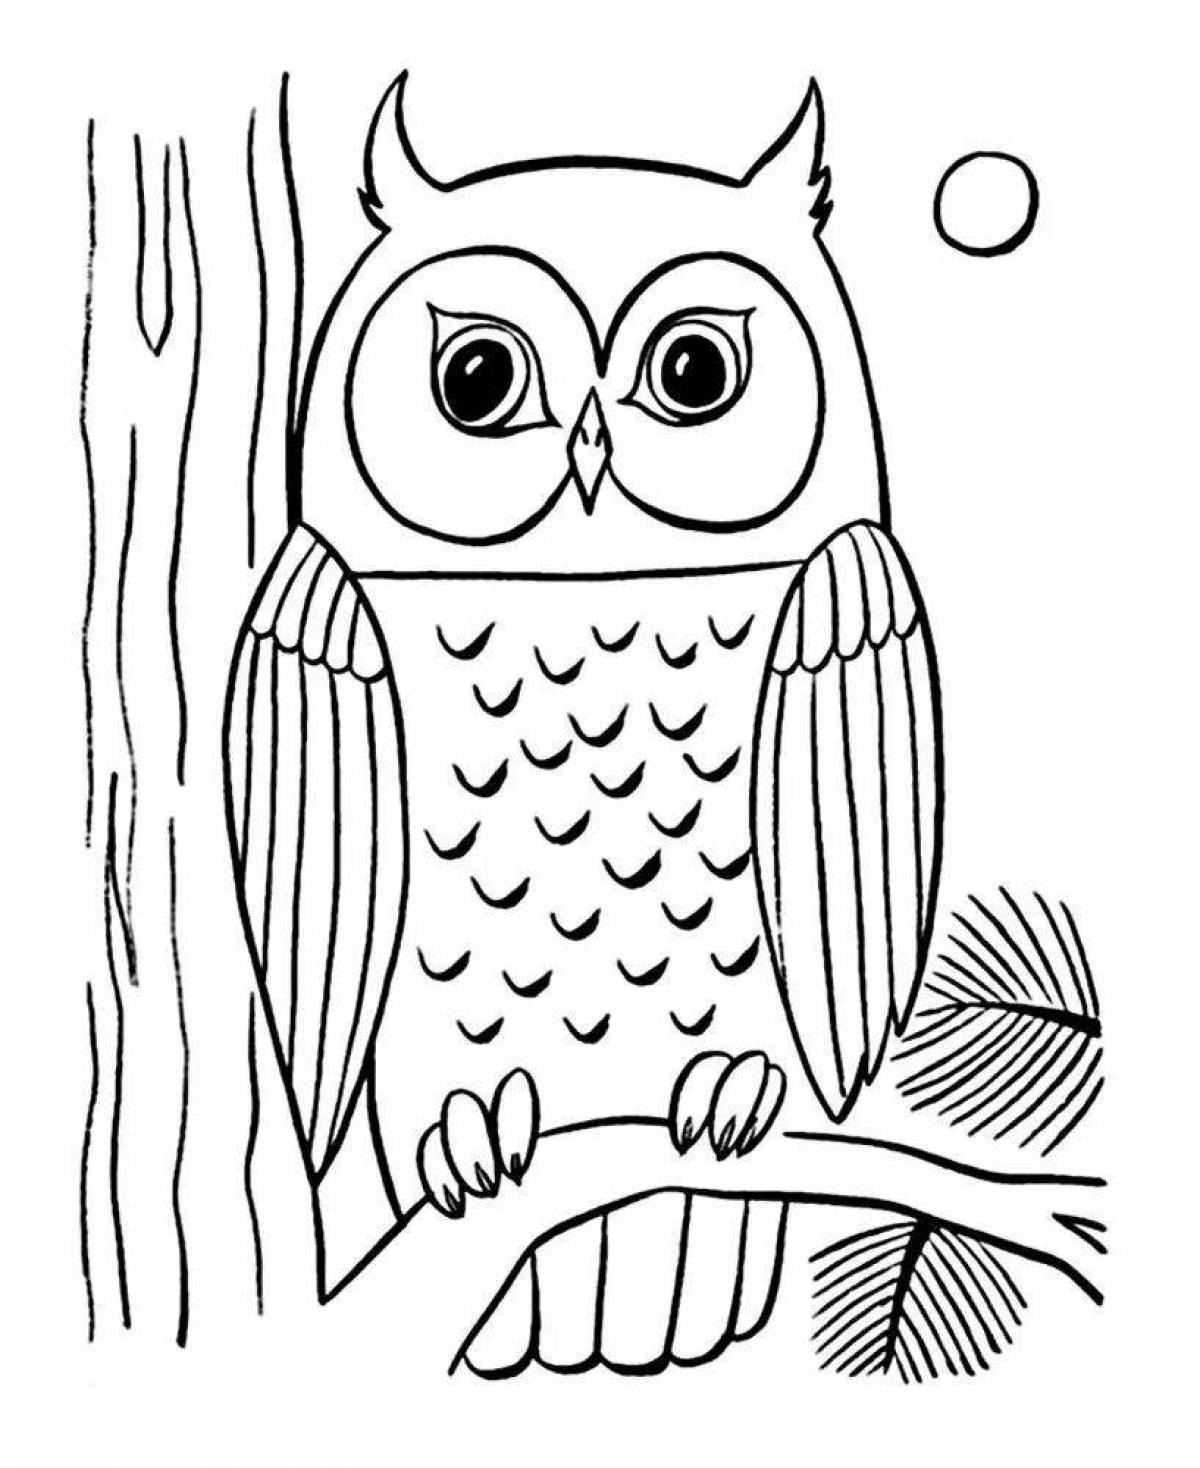 Fun coloring owl on a tree